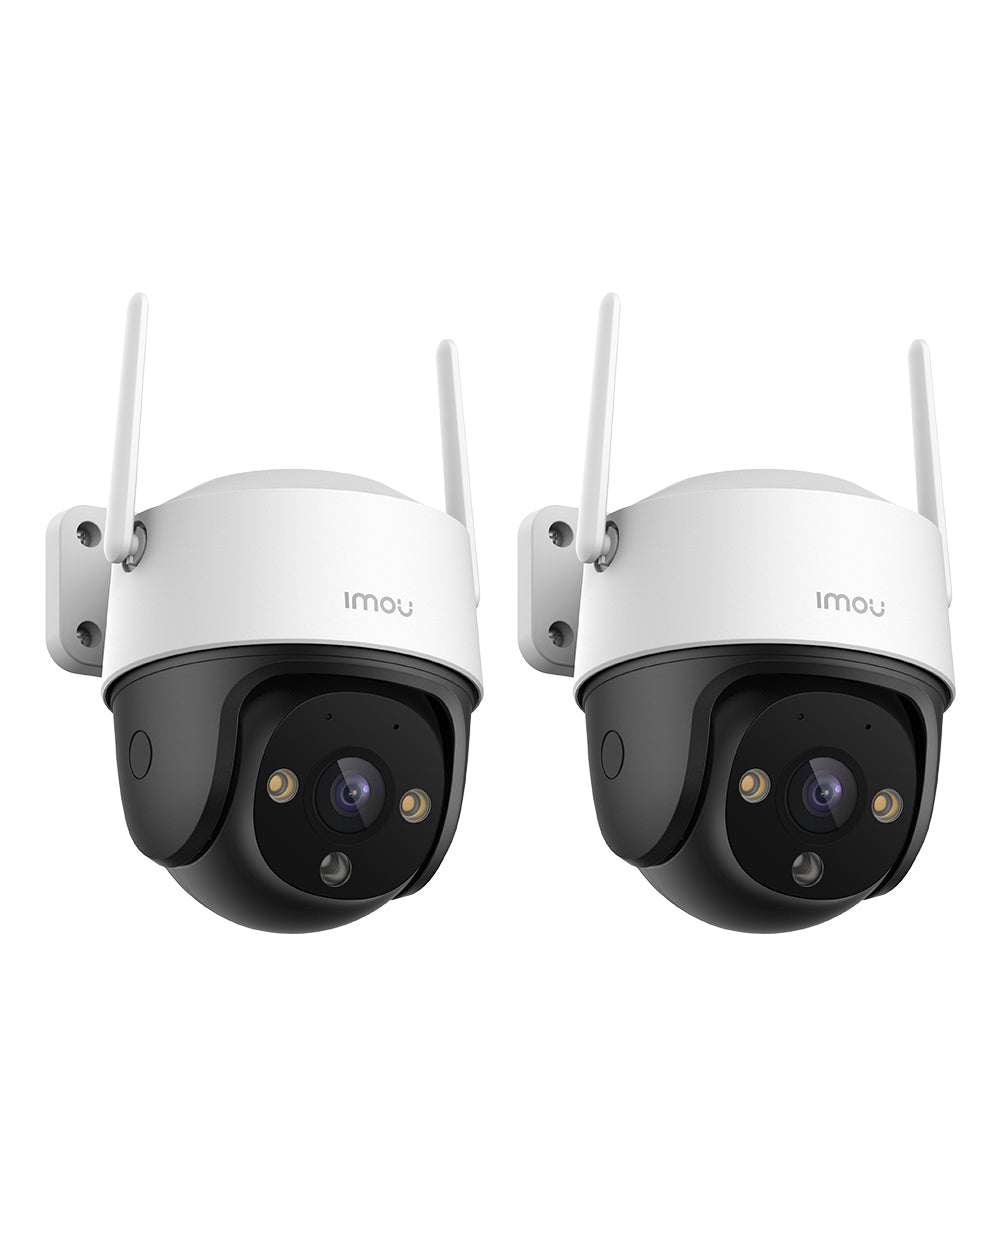 Imou 360° Caméra Surveillance WiFi Extérieure, PTZ Caméra IP Exterieur  1080P